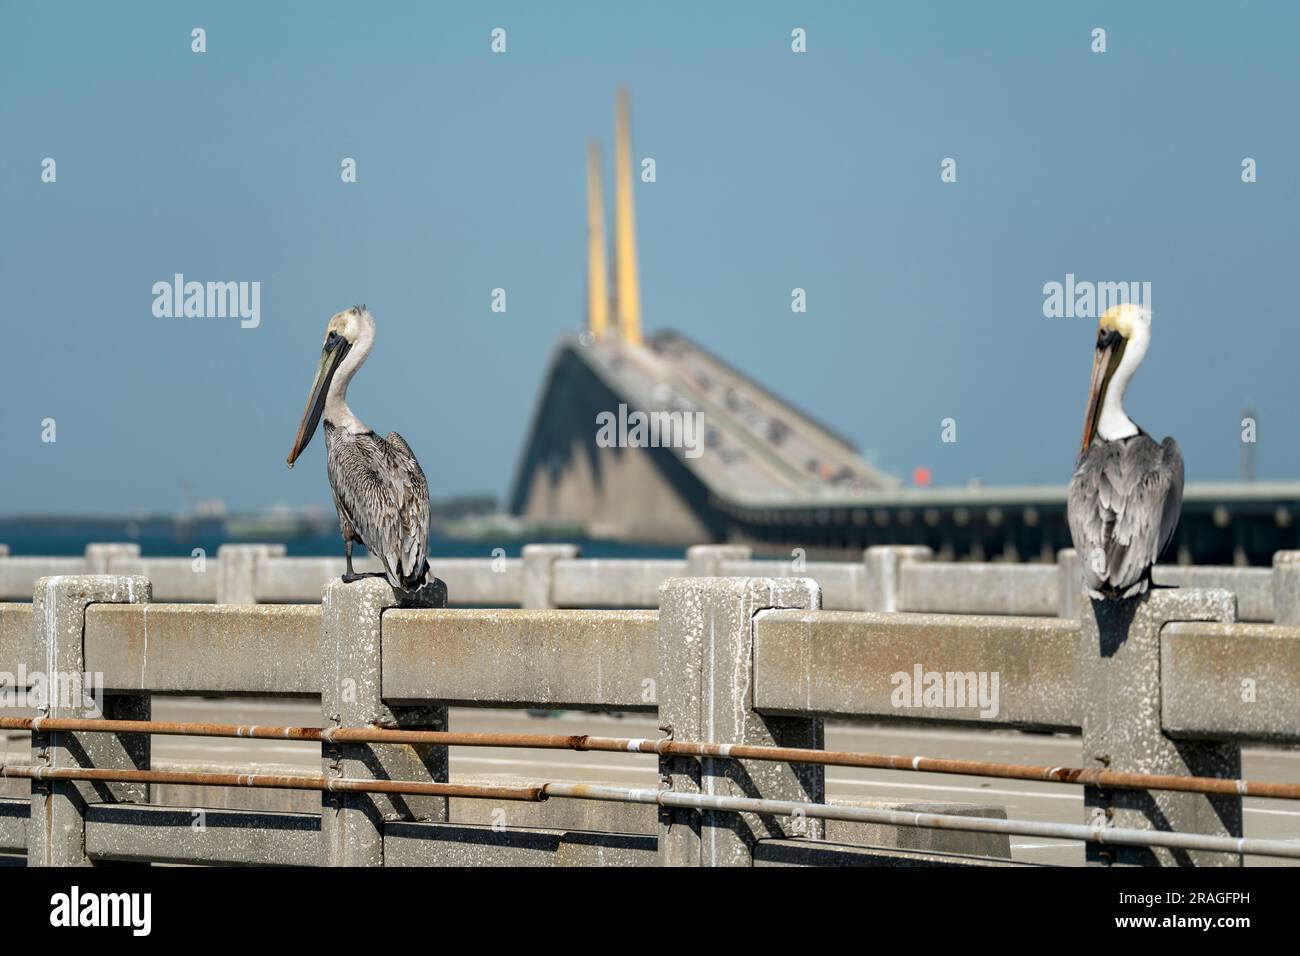 Pelikanvögel, die vor der Sunshine Skyway Bridge über der Tampa Bay in Florida auf dem Geländer sitzen und sich bewegen. Konzept der Transportinfrastruktur Stockfoto